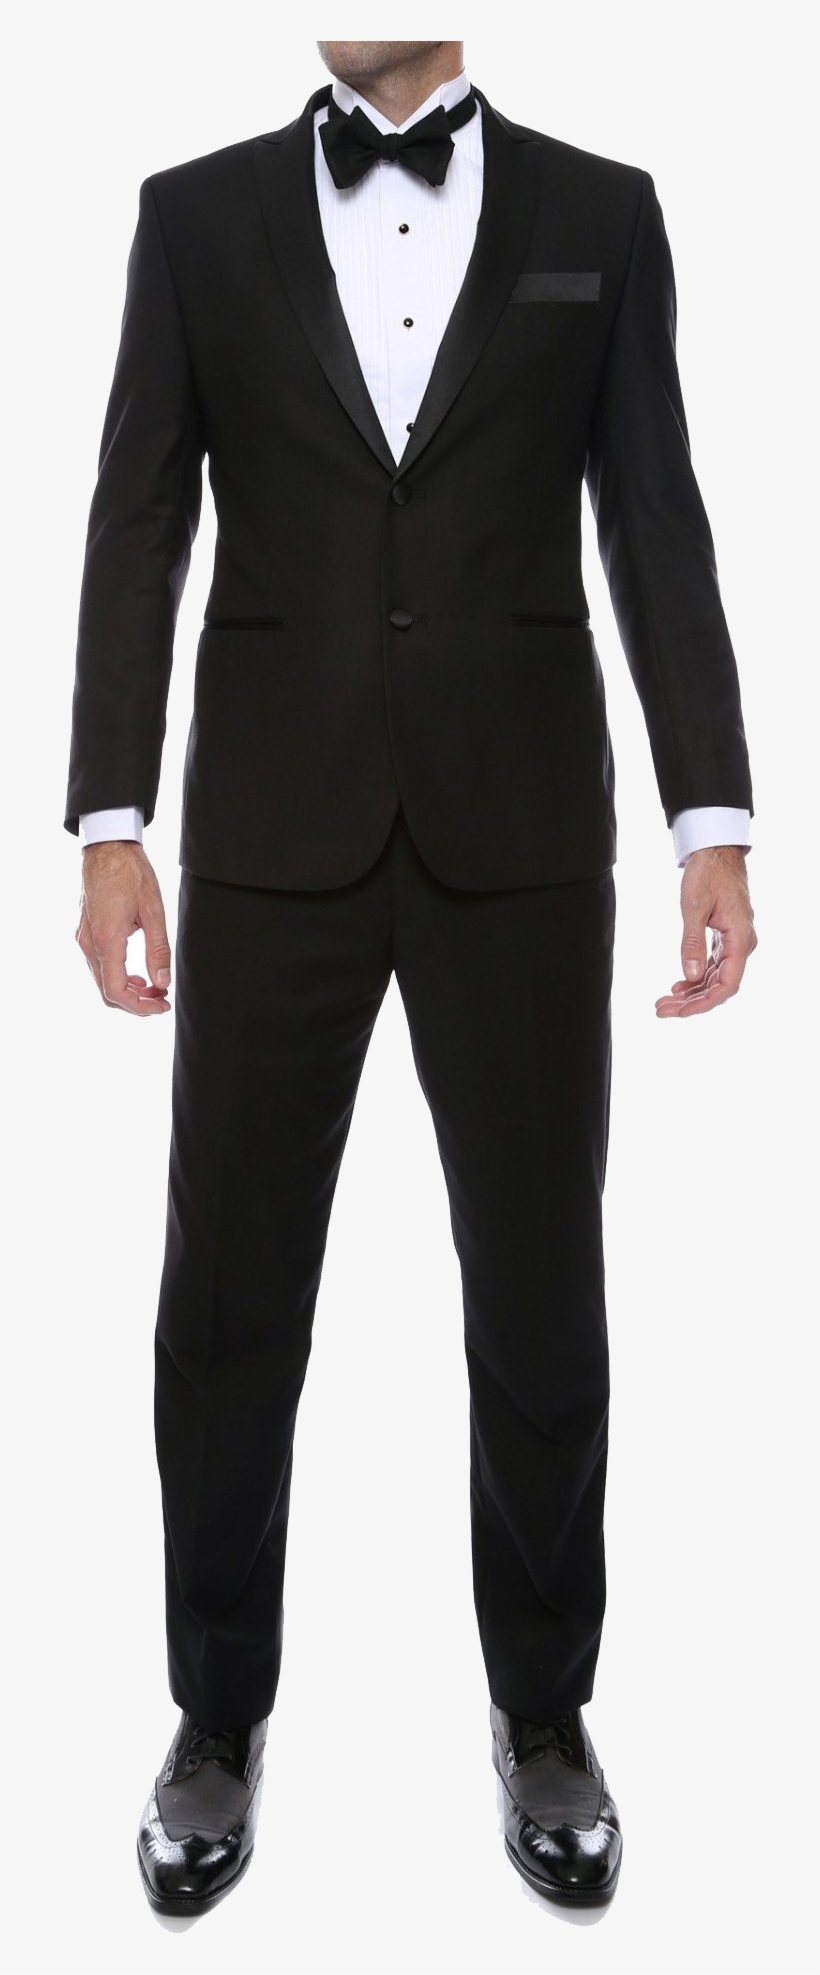 Suit Transparent Tuxedo - Black Suit Transparent Background, transparent png #9384892